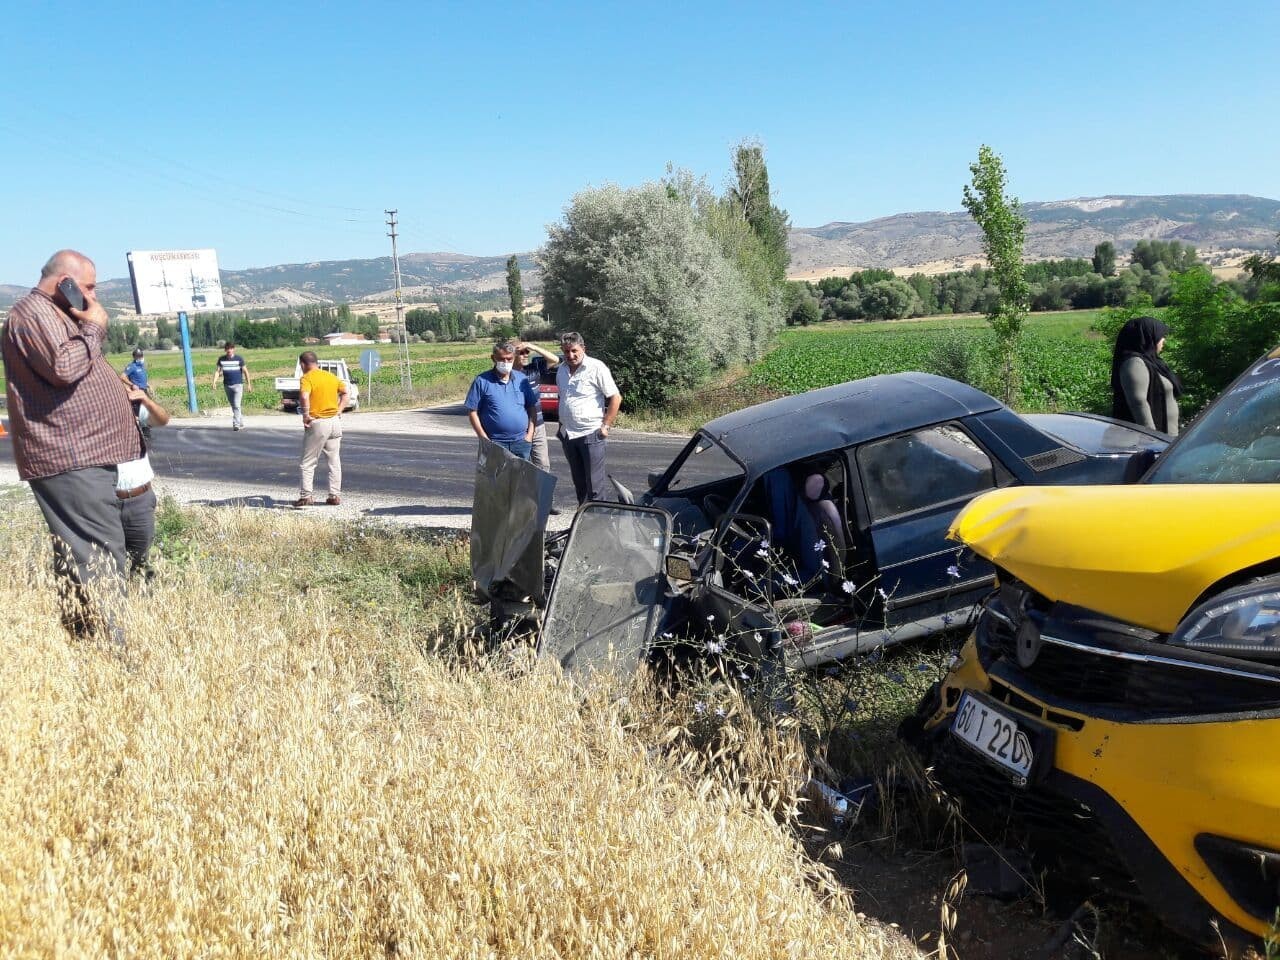 Tokat’ta ticari araçla otomobil çarpıştı: 4 yaralı